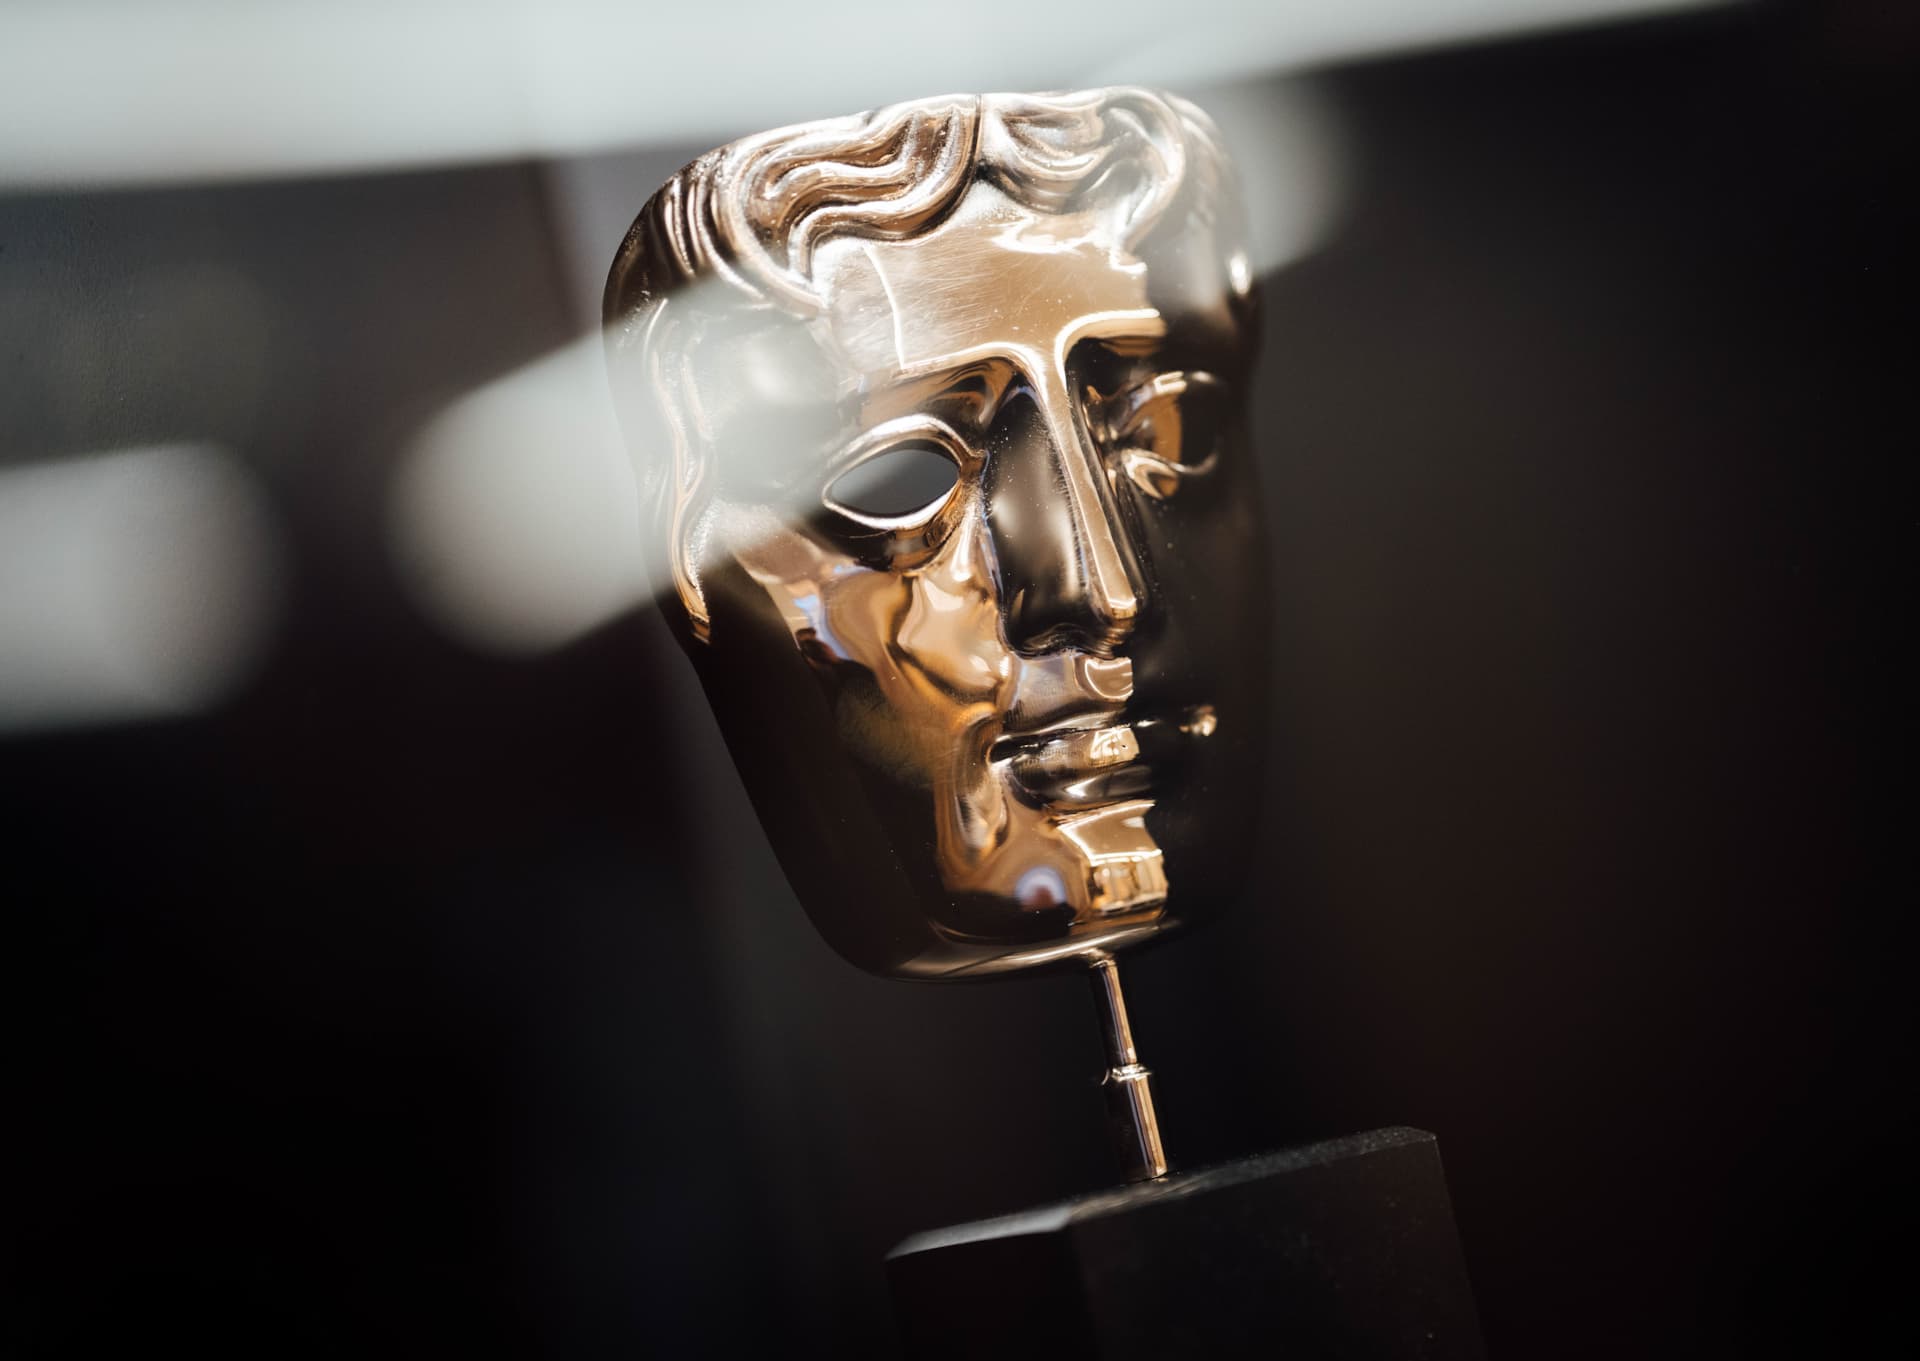 Veja os vencedores da BAFTA Games Awards 2019; God of War é o jogo